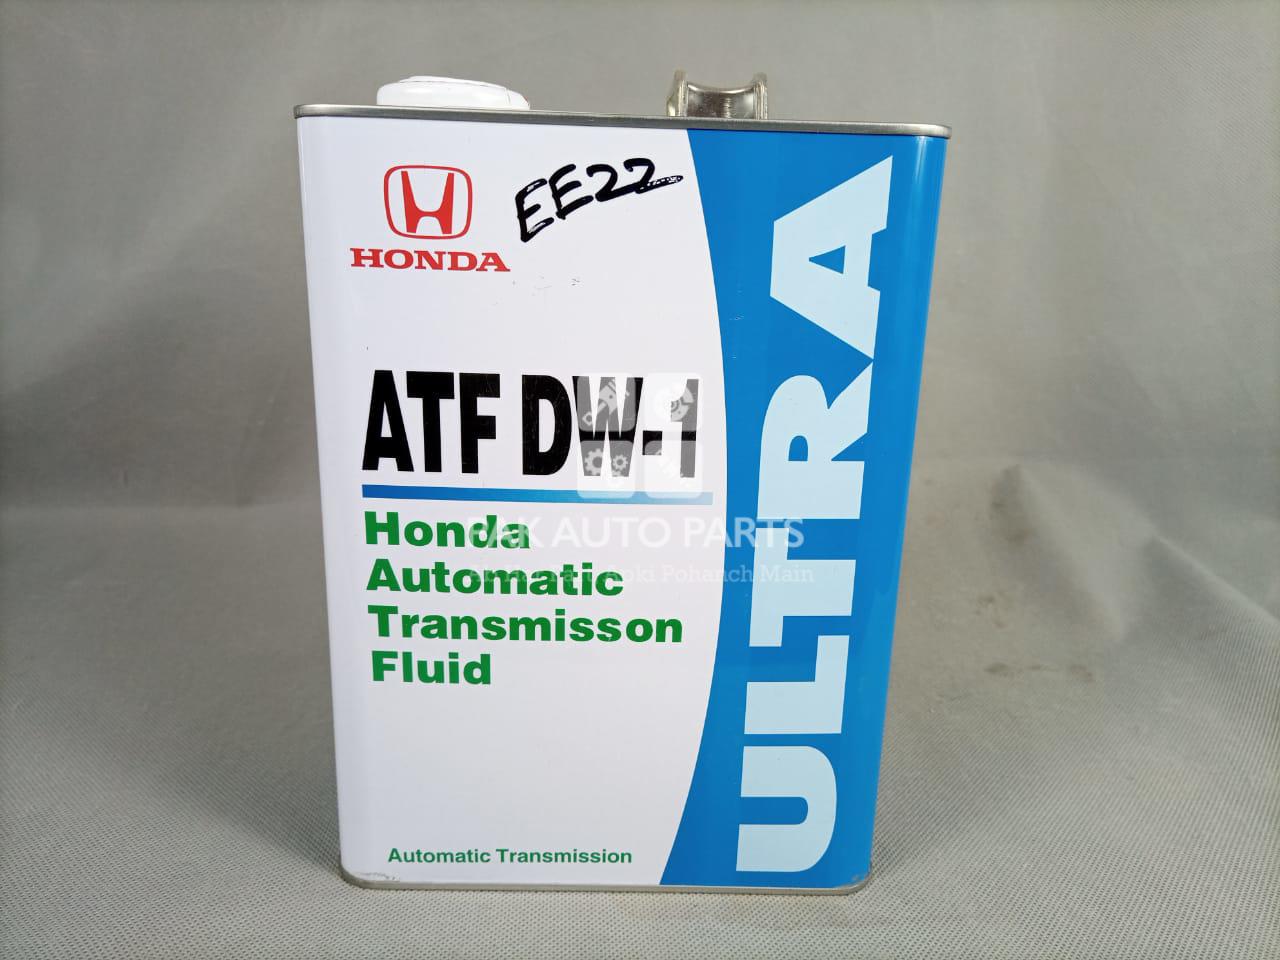 Atf dw1 honda. Honda ATF DW-1. Honda ATF dw1 4л артикул. Масло Honda ATF dw1 4 литра. ATF dw1 Honda железная банка.